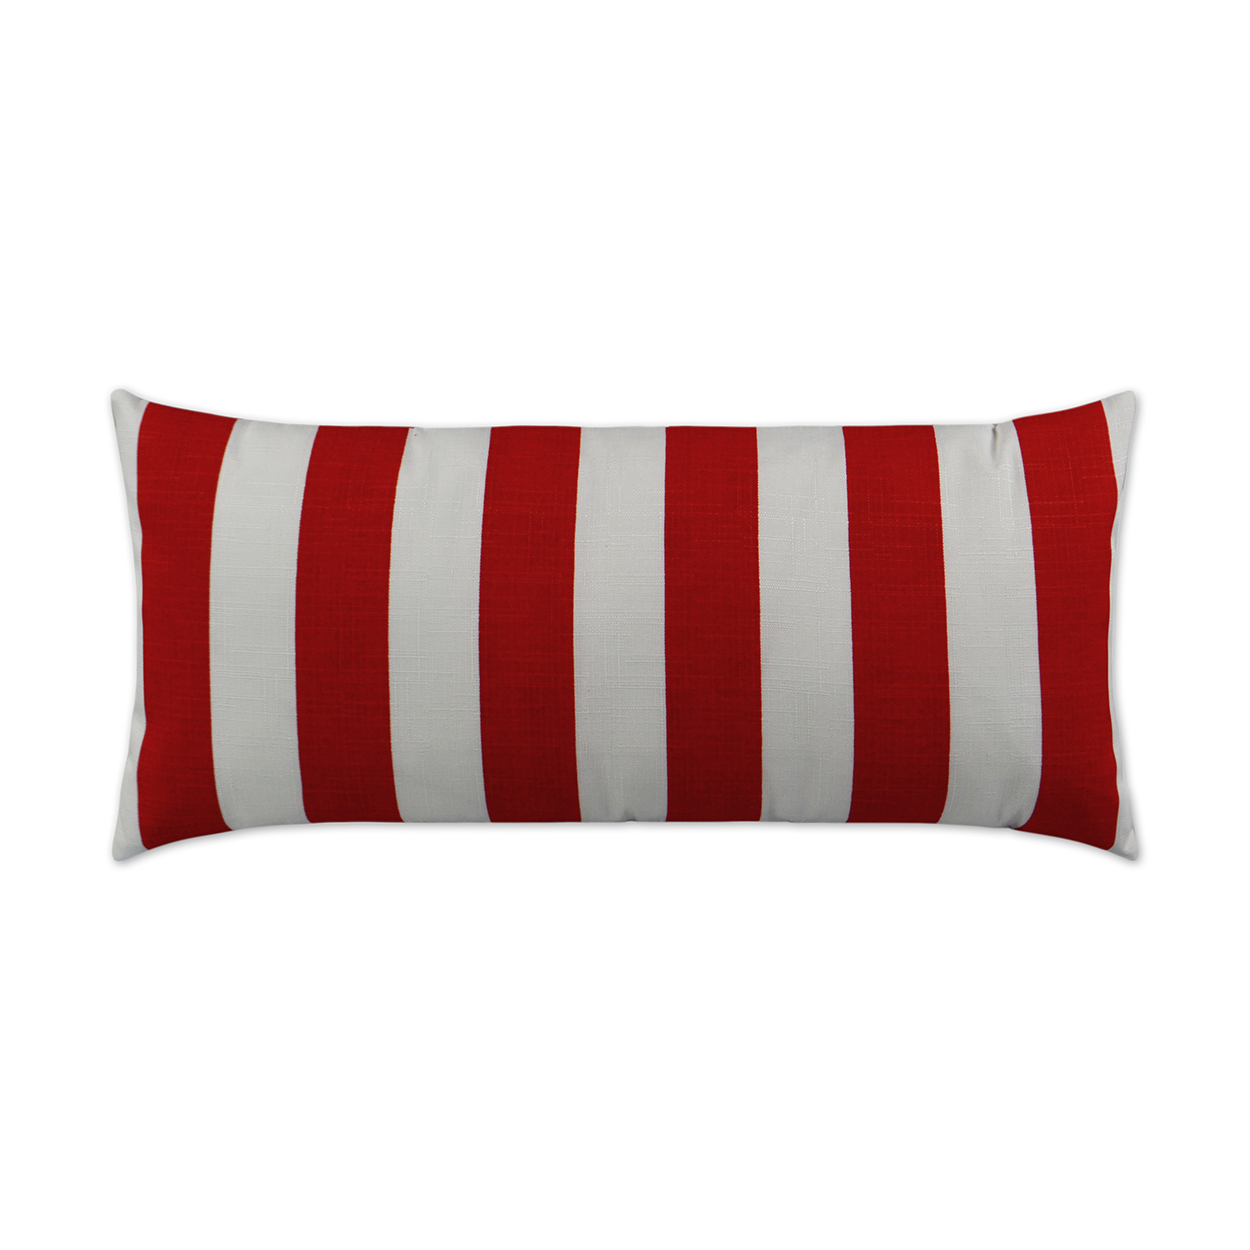 Classics Red Lumbar Outdoor Pillow 24x12